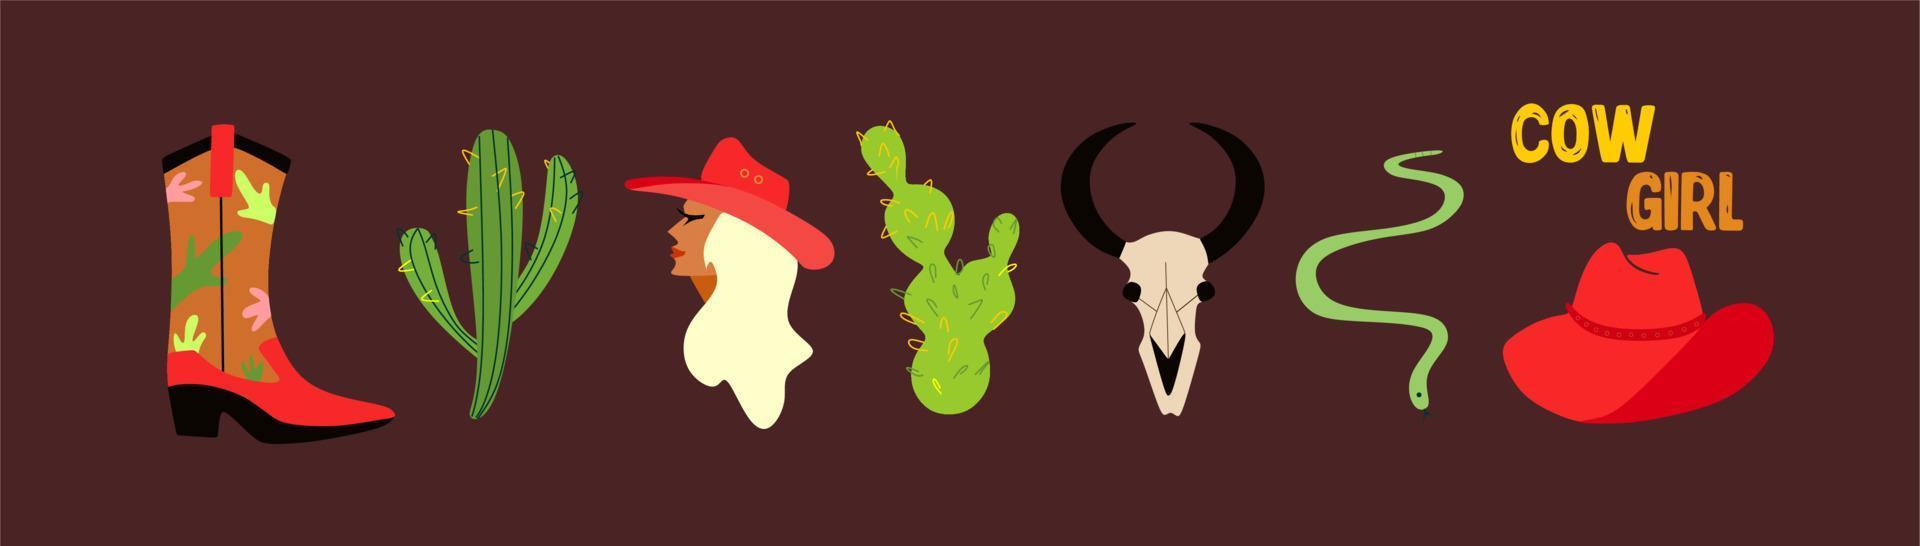 un conjunto de dibujos sobre el tema del salvaje oeste. una vaquera, tres tipos de cactus, una calavera de toro, una serpiente, botas vaqueras y un sombrero. ilustración retro - conjunto de elementos. estado de ánimo vaquero. vector